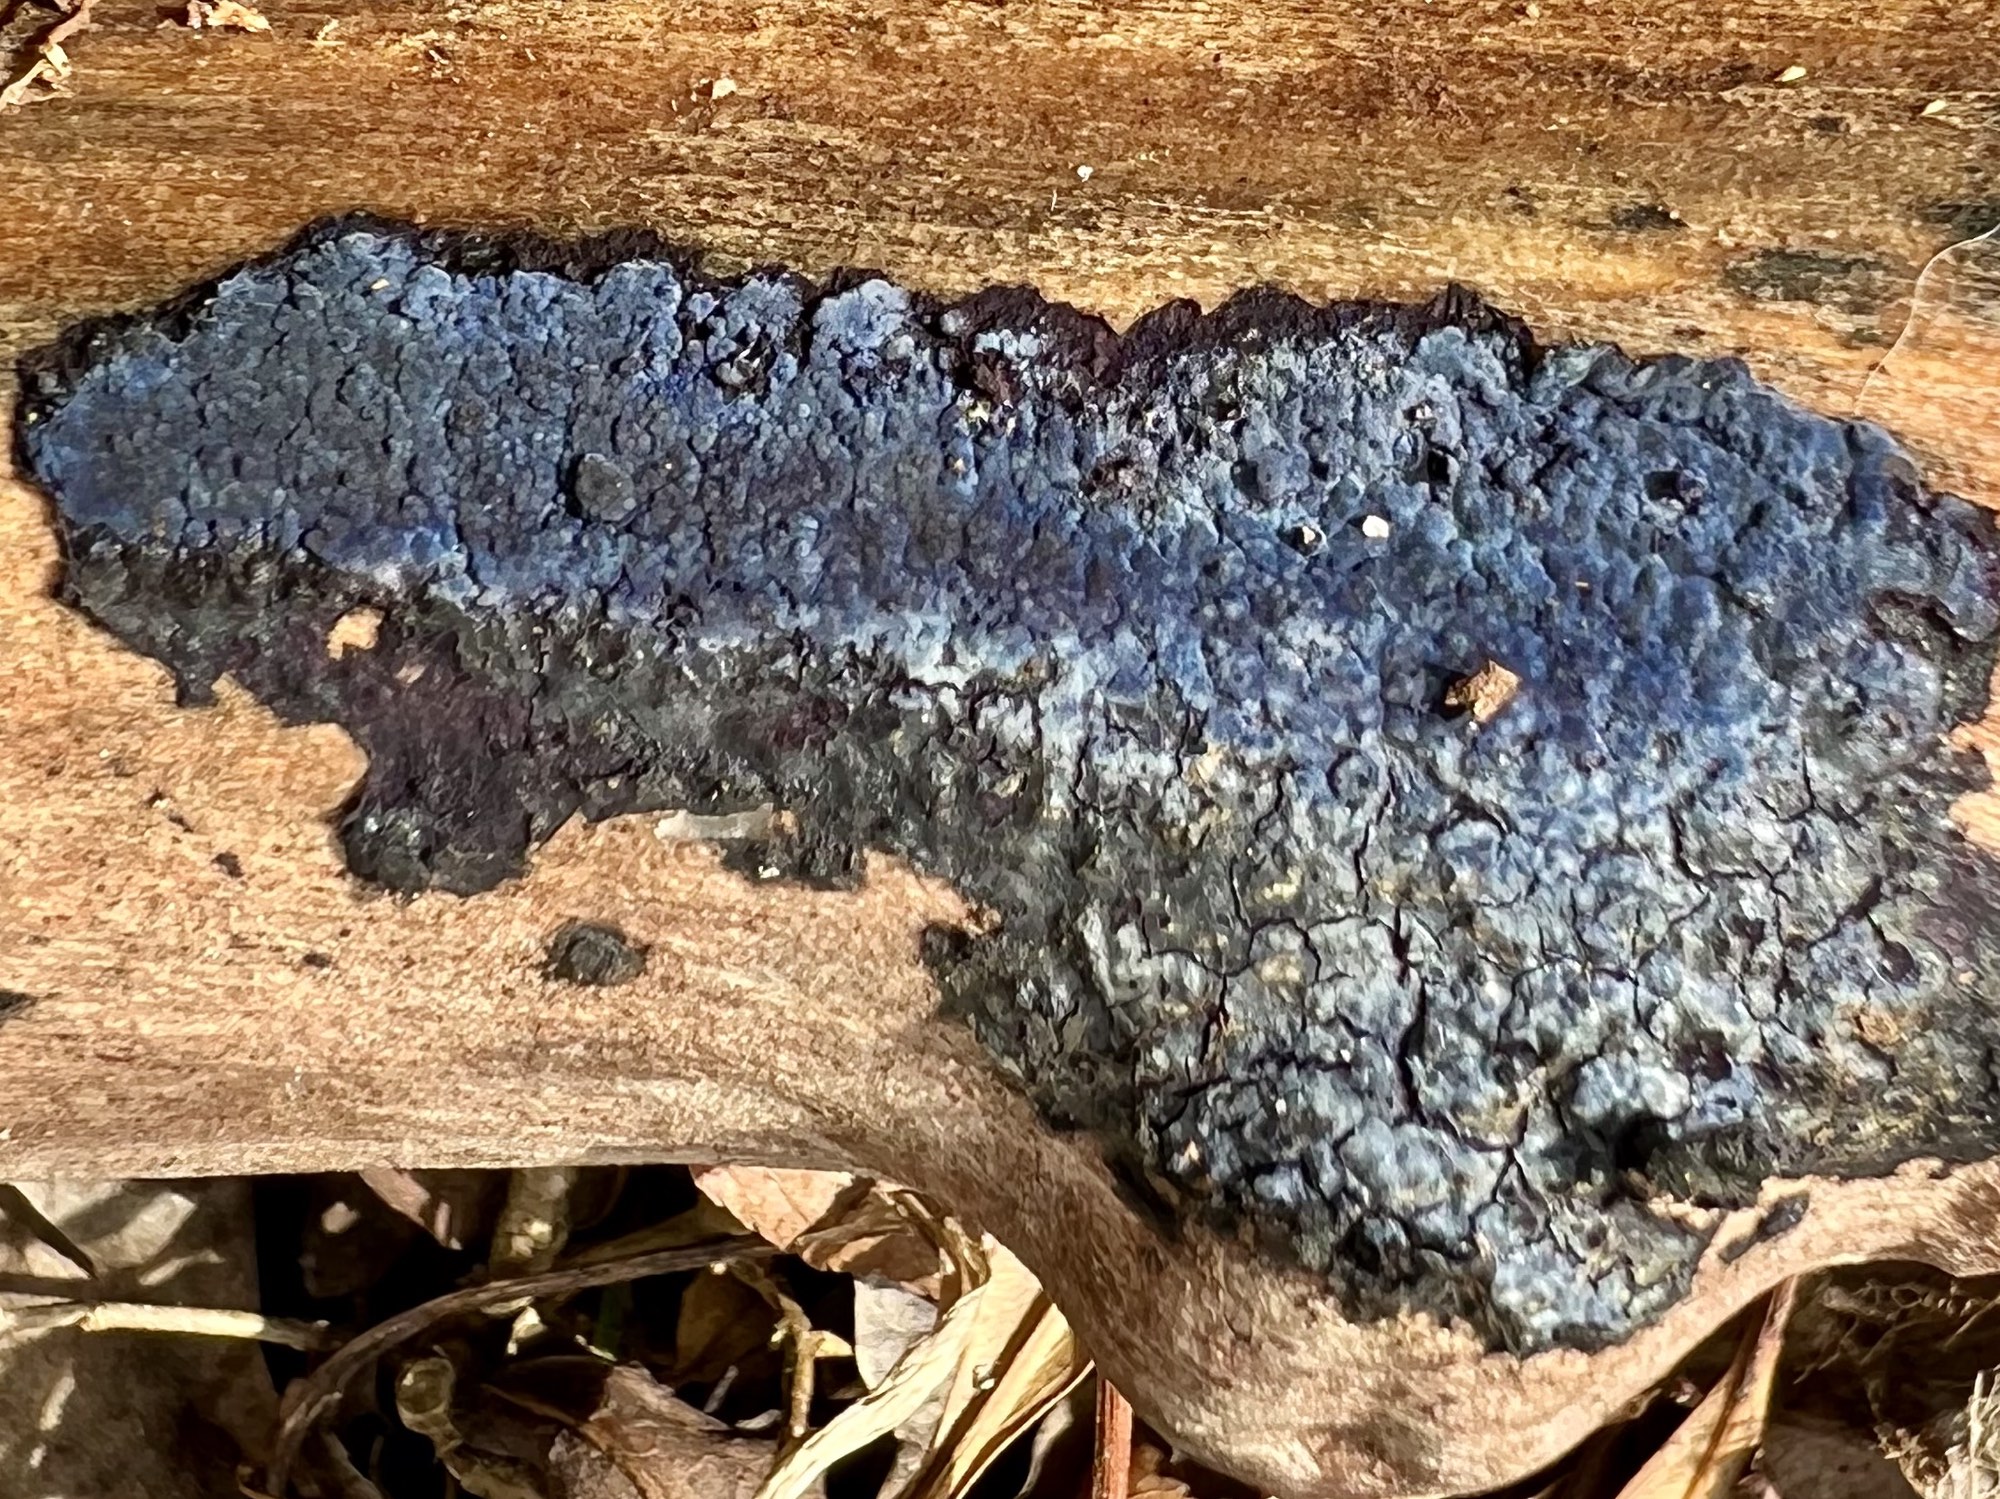 Cobalt Crust Fungus